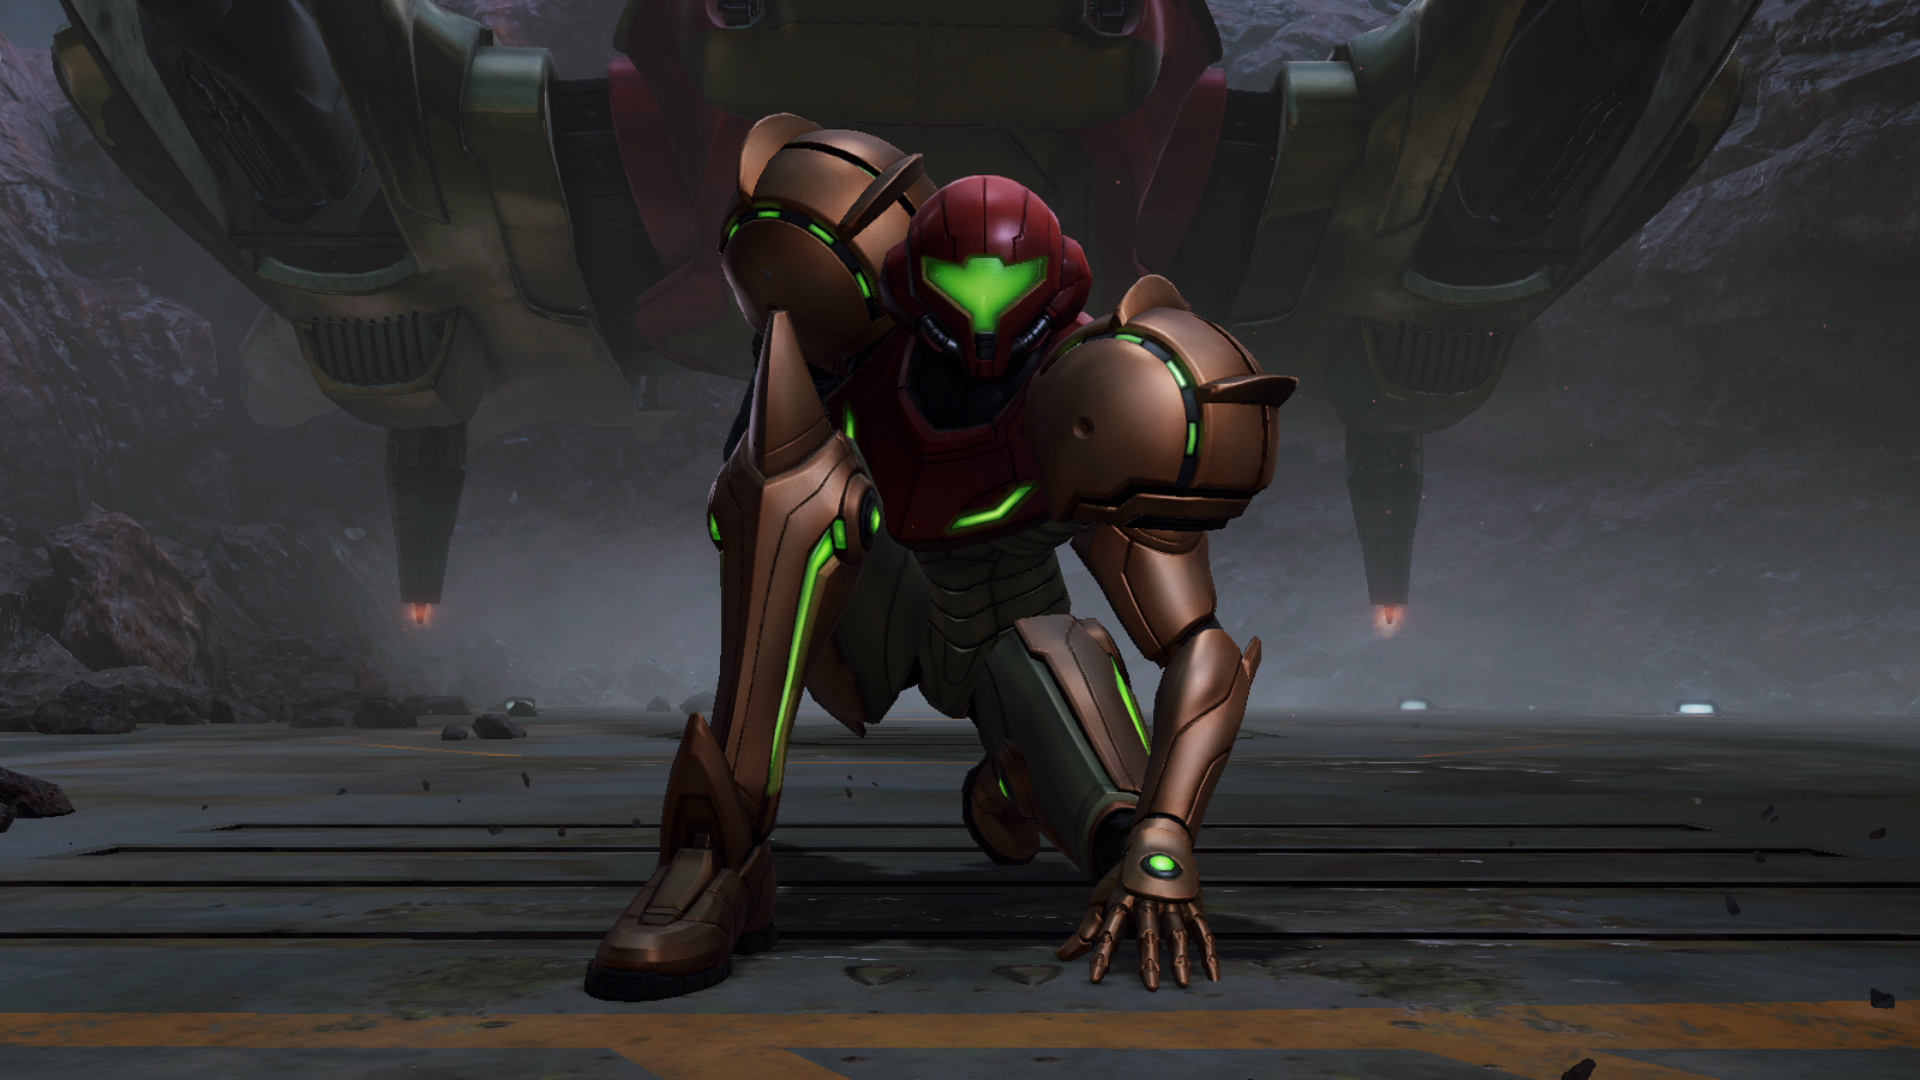 Samus Aran poses in Metroid Prime 4: Beyond.